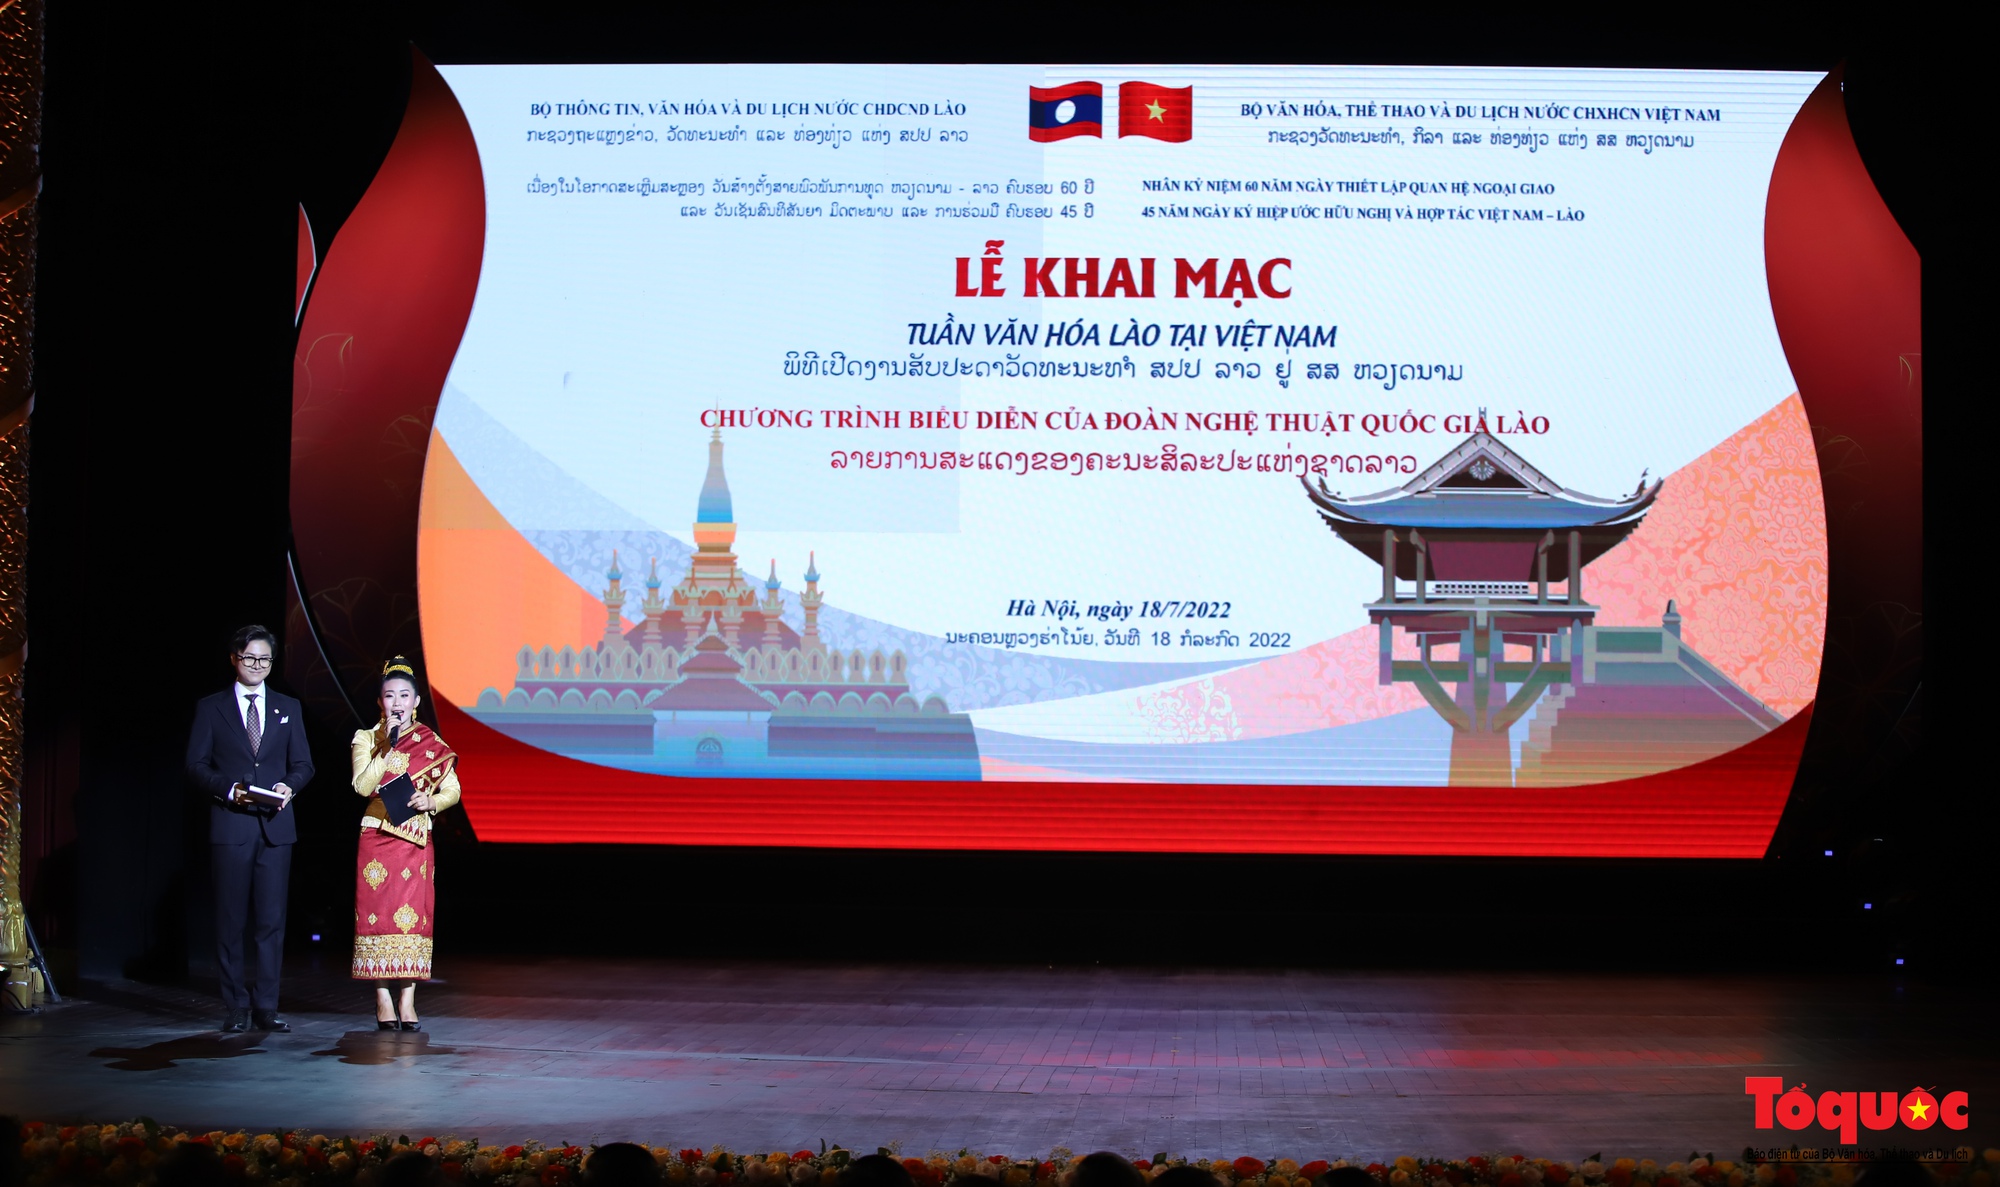 Tuần Văn hóa Lào tại Việt Nam: Đặc sắc chương trình nghệ thuật văn hóa Lào - Ảnh 1.